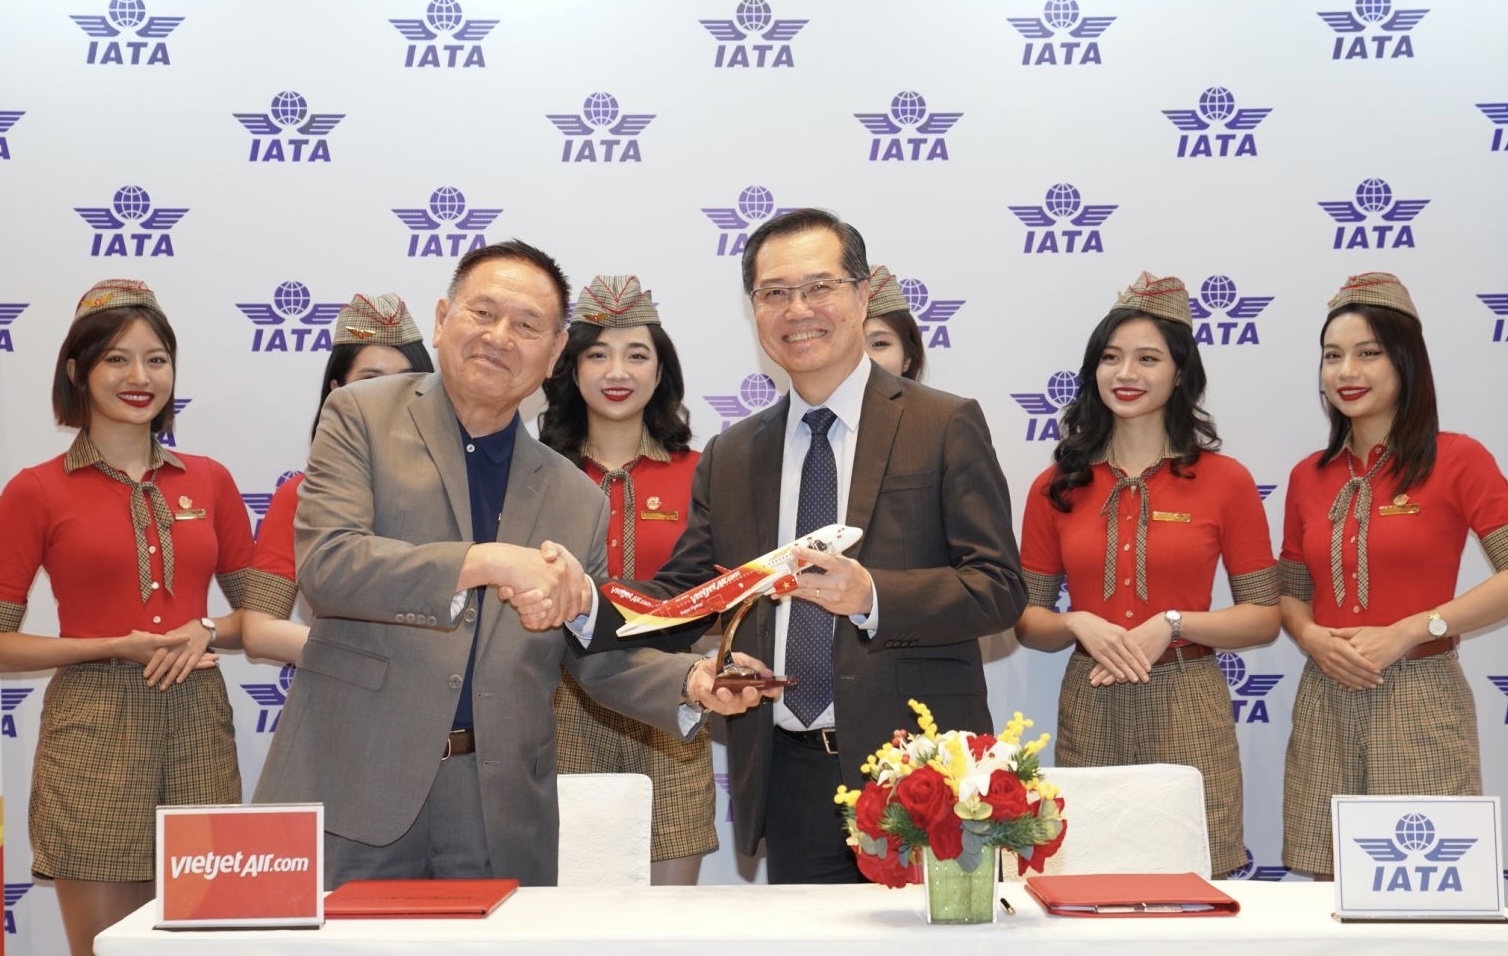 Ông Philip Goh - Phó Chủ tịch IATA khu vực Châu Á - Thái Bình Dương và Phó Tổng giám đốc Vietjet, Chủ tịch Học viện Hàng không Vietjet, ông Lương Thế Phúc (trái) ký kết hợp tác đưa Học viện Hàng không Vietjet tham gia mạng lưới đào tạo quốc tế của IATA